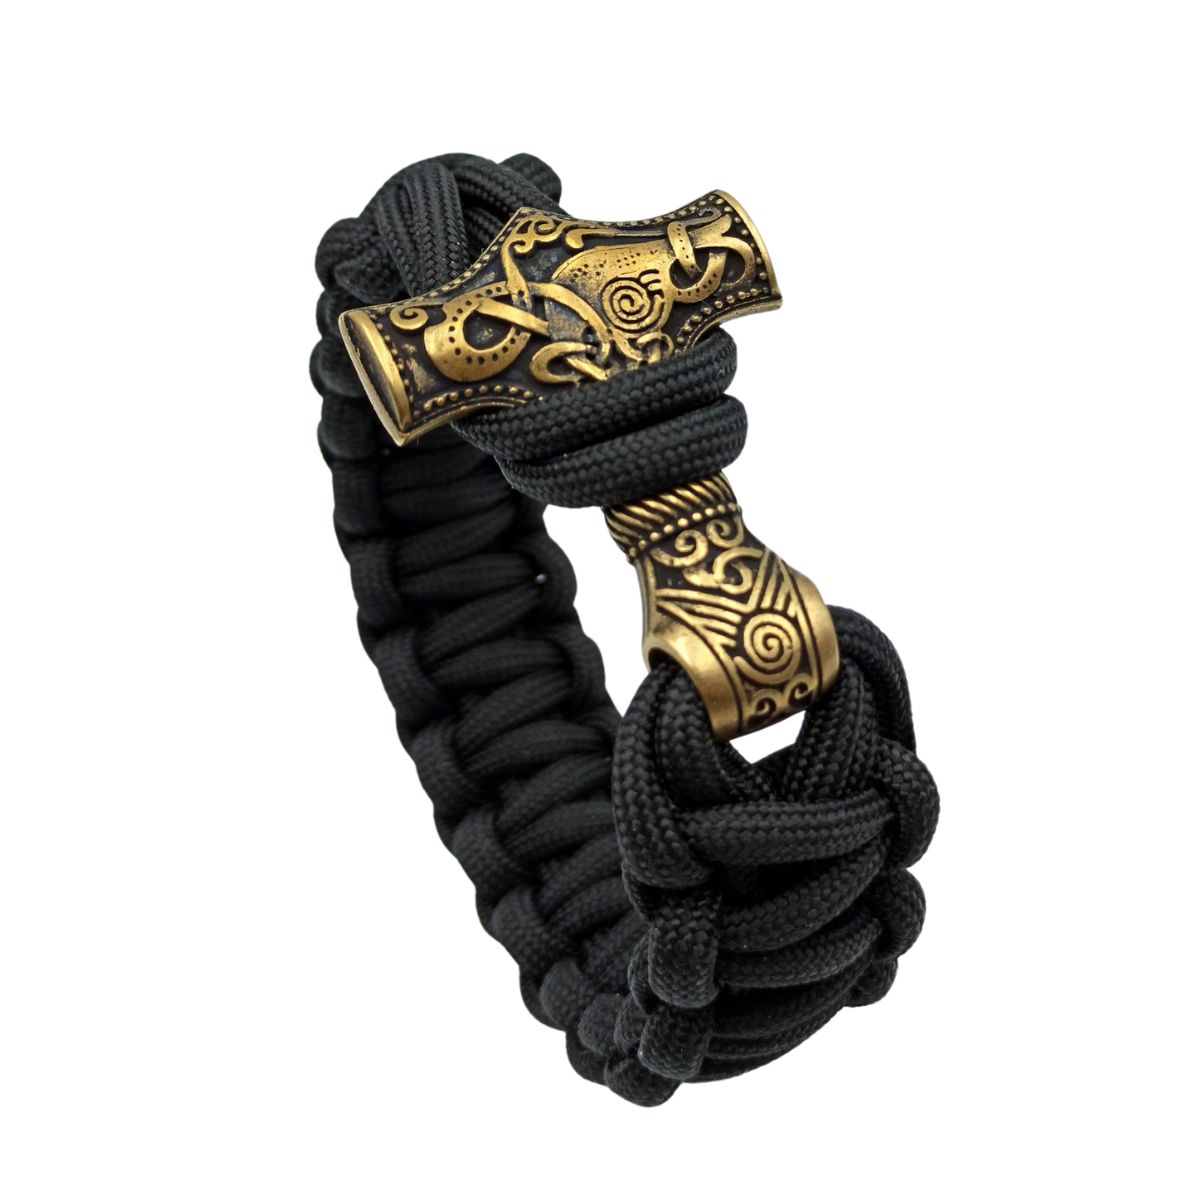 Mjolnir replica paracord bracelet 6 inch | 15 Cm Black 